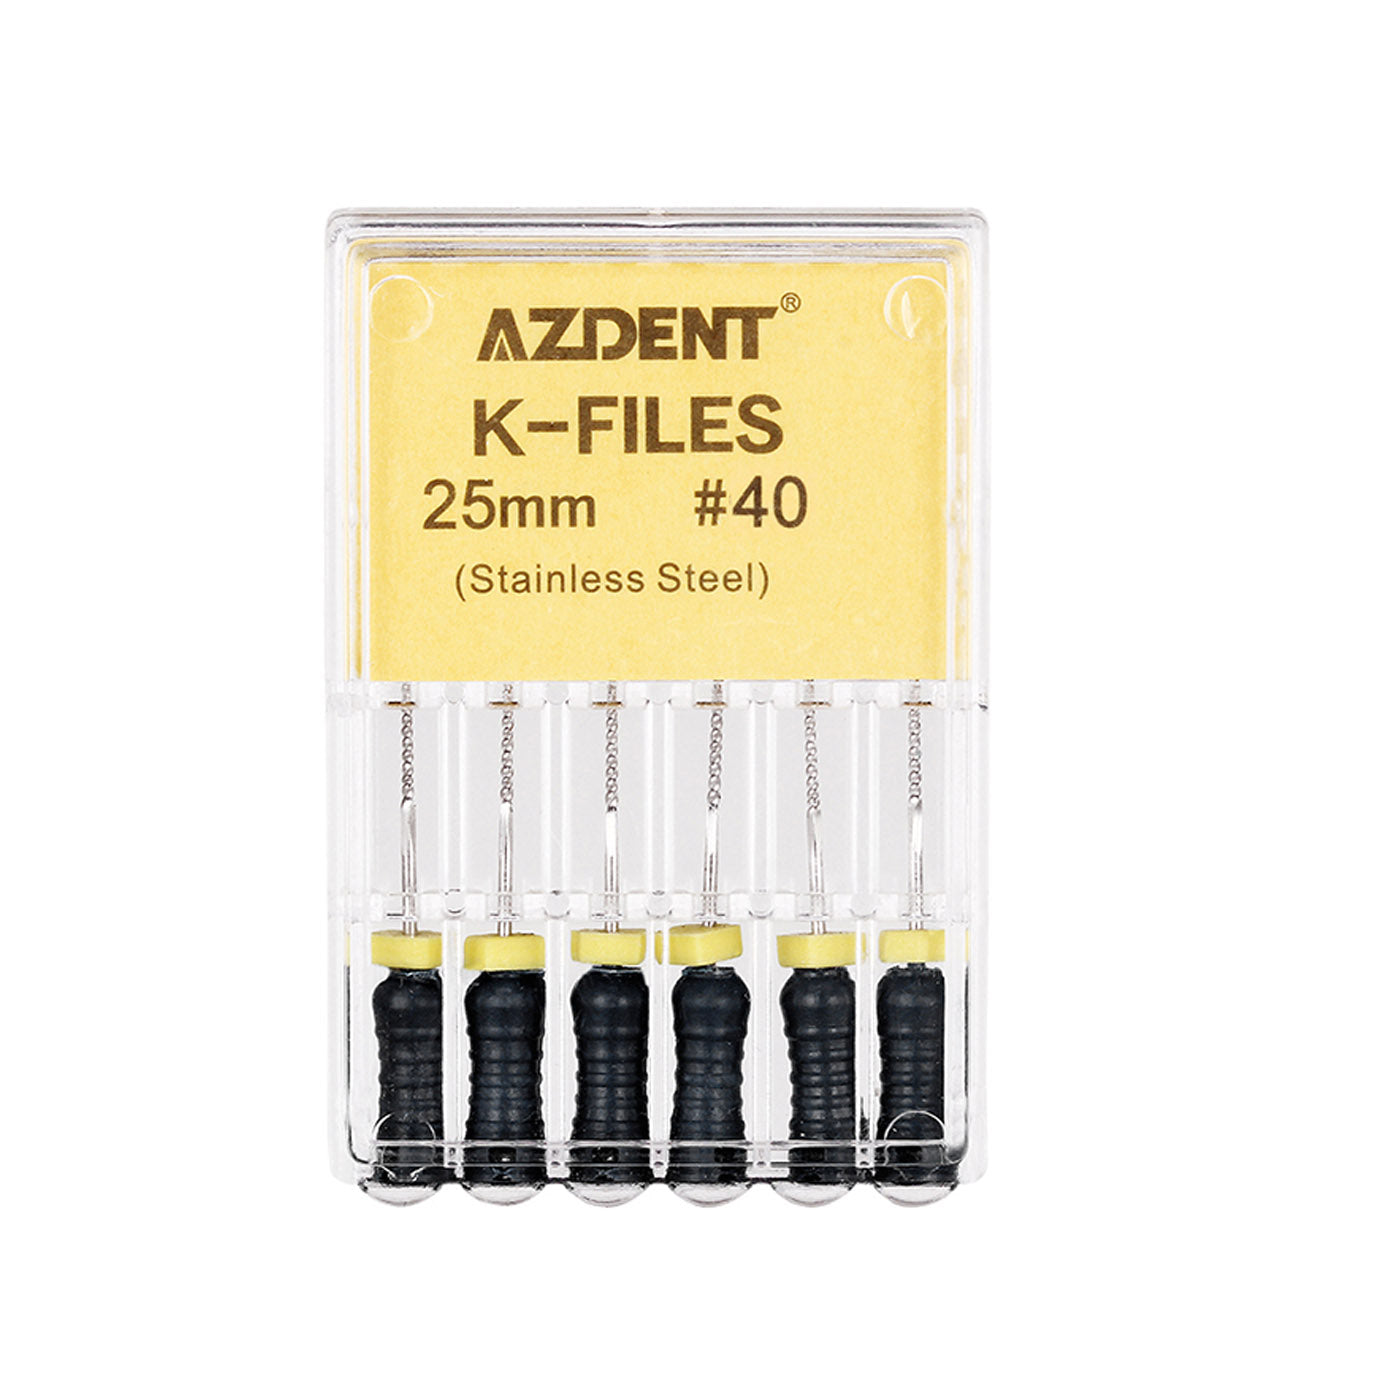 AZDENT Dental Hand K-Files Stainless Steel 25mm #15-80 6p/Pk 9 Color-azdentall.com